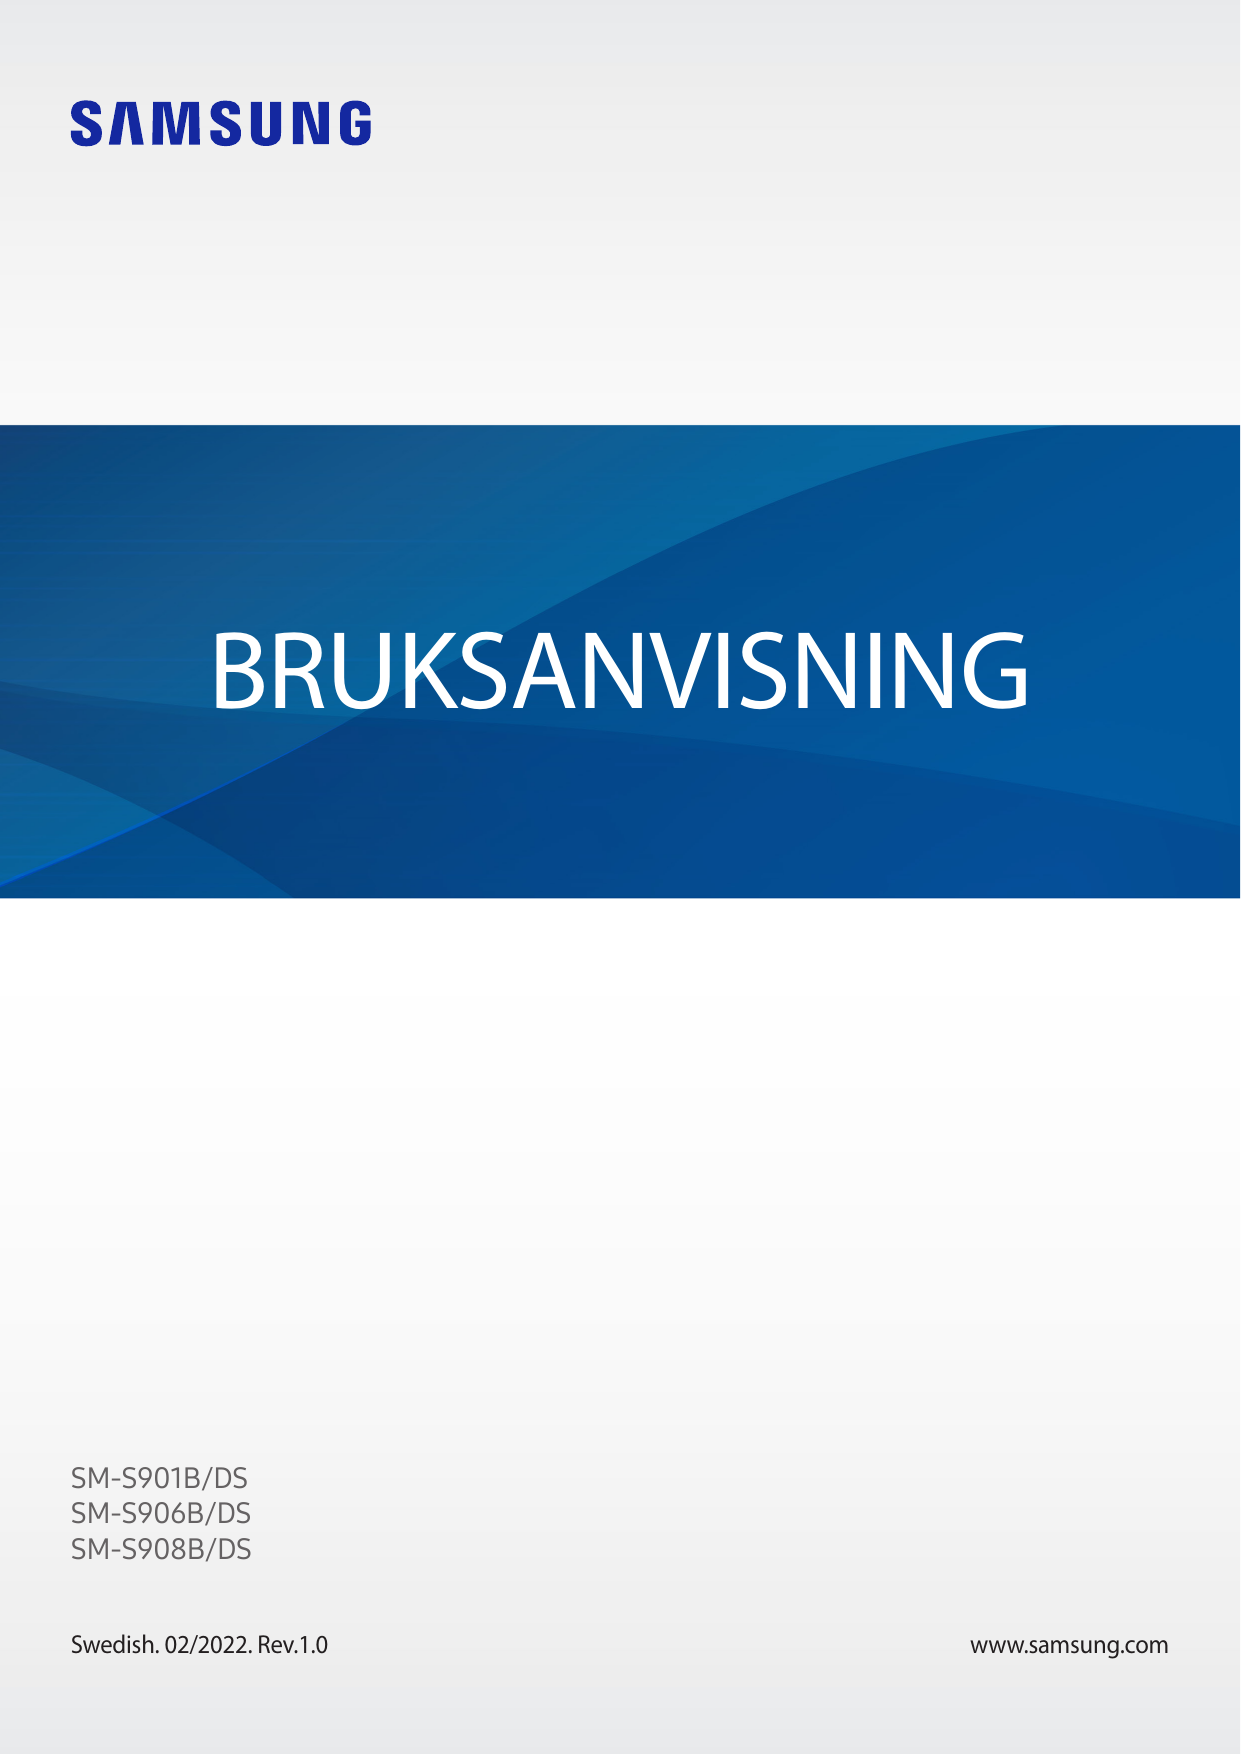 BRUKSANVISNINGSM-S901B/DSSM-S906B/DSSM-S908B/DSSwedish. 02/2022. Rev.1.0www.samsung.com